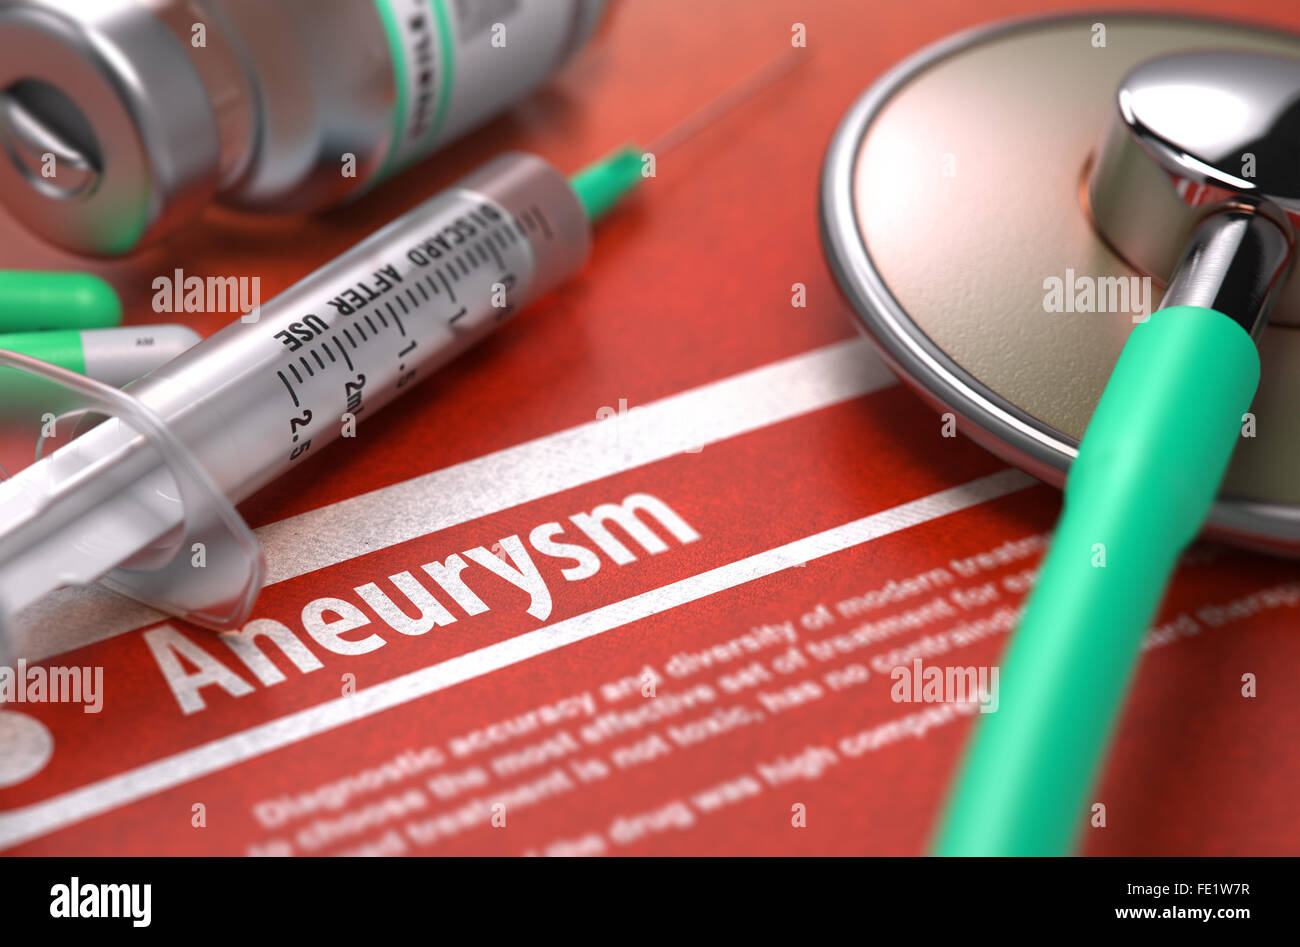 Aneurysm - Printed Diagnosis on Orange Background. Stock Photo